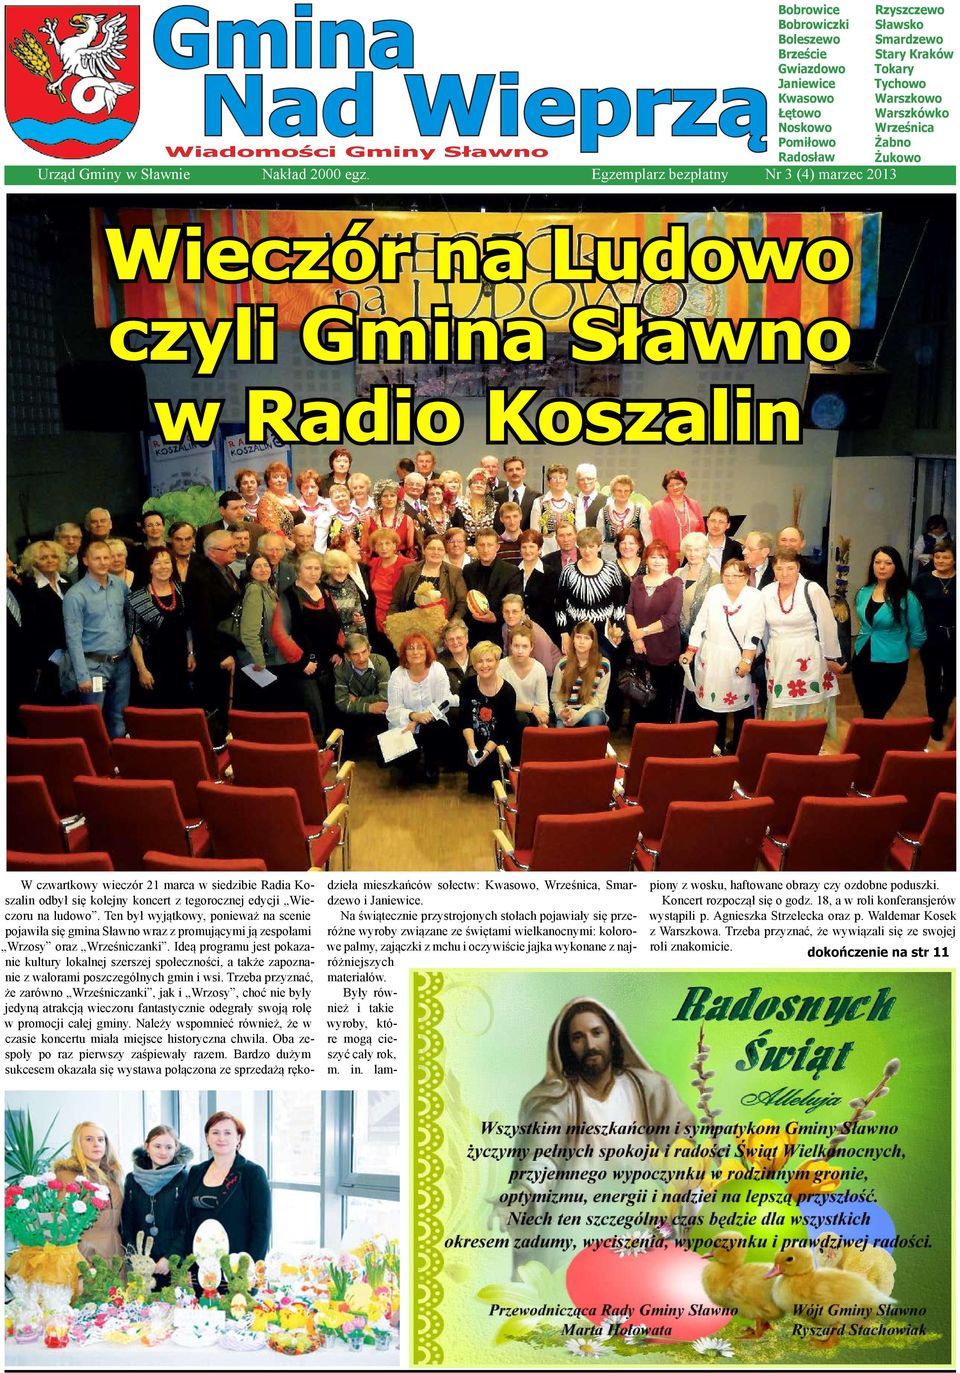 czwartkowy wieczór 21 marca w siedzibie Radia Koszalin odbył się kolejny koncert z tegorocznej edycji Wieczoru na ludowo.